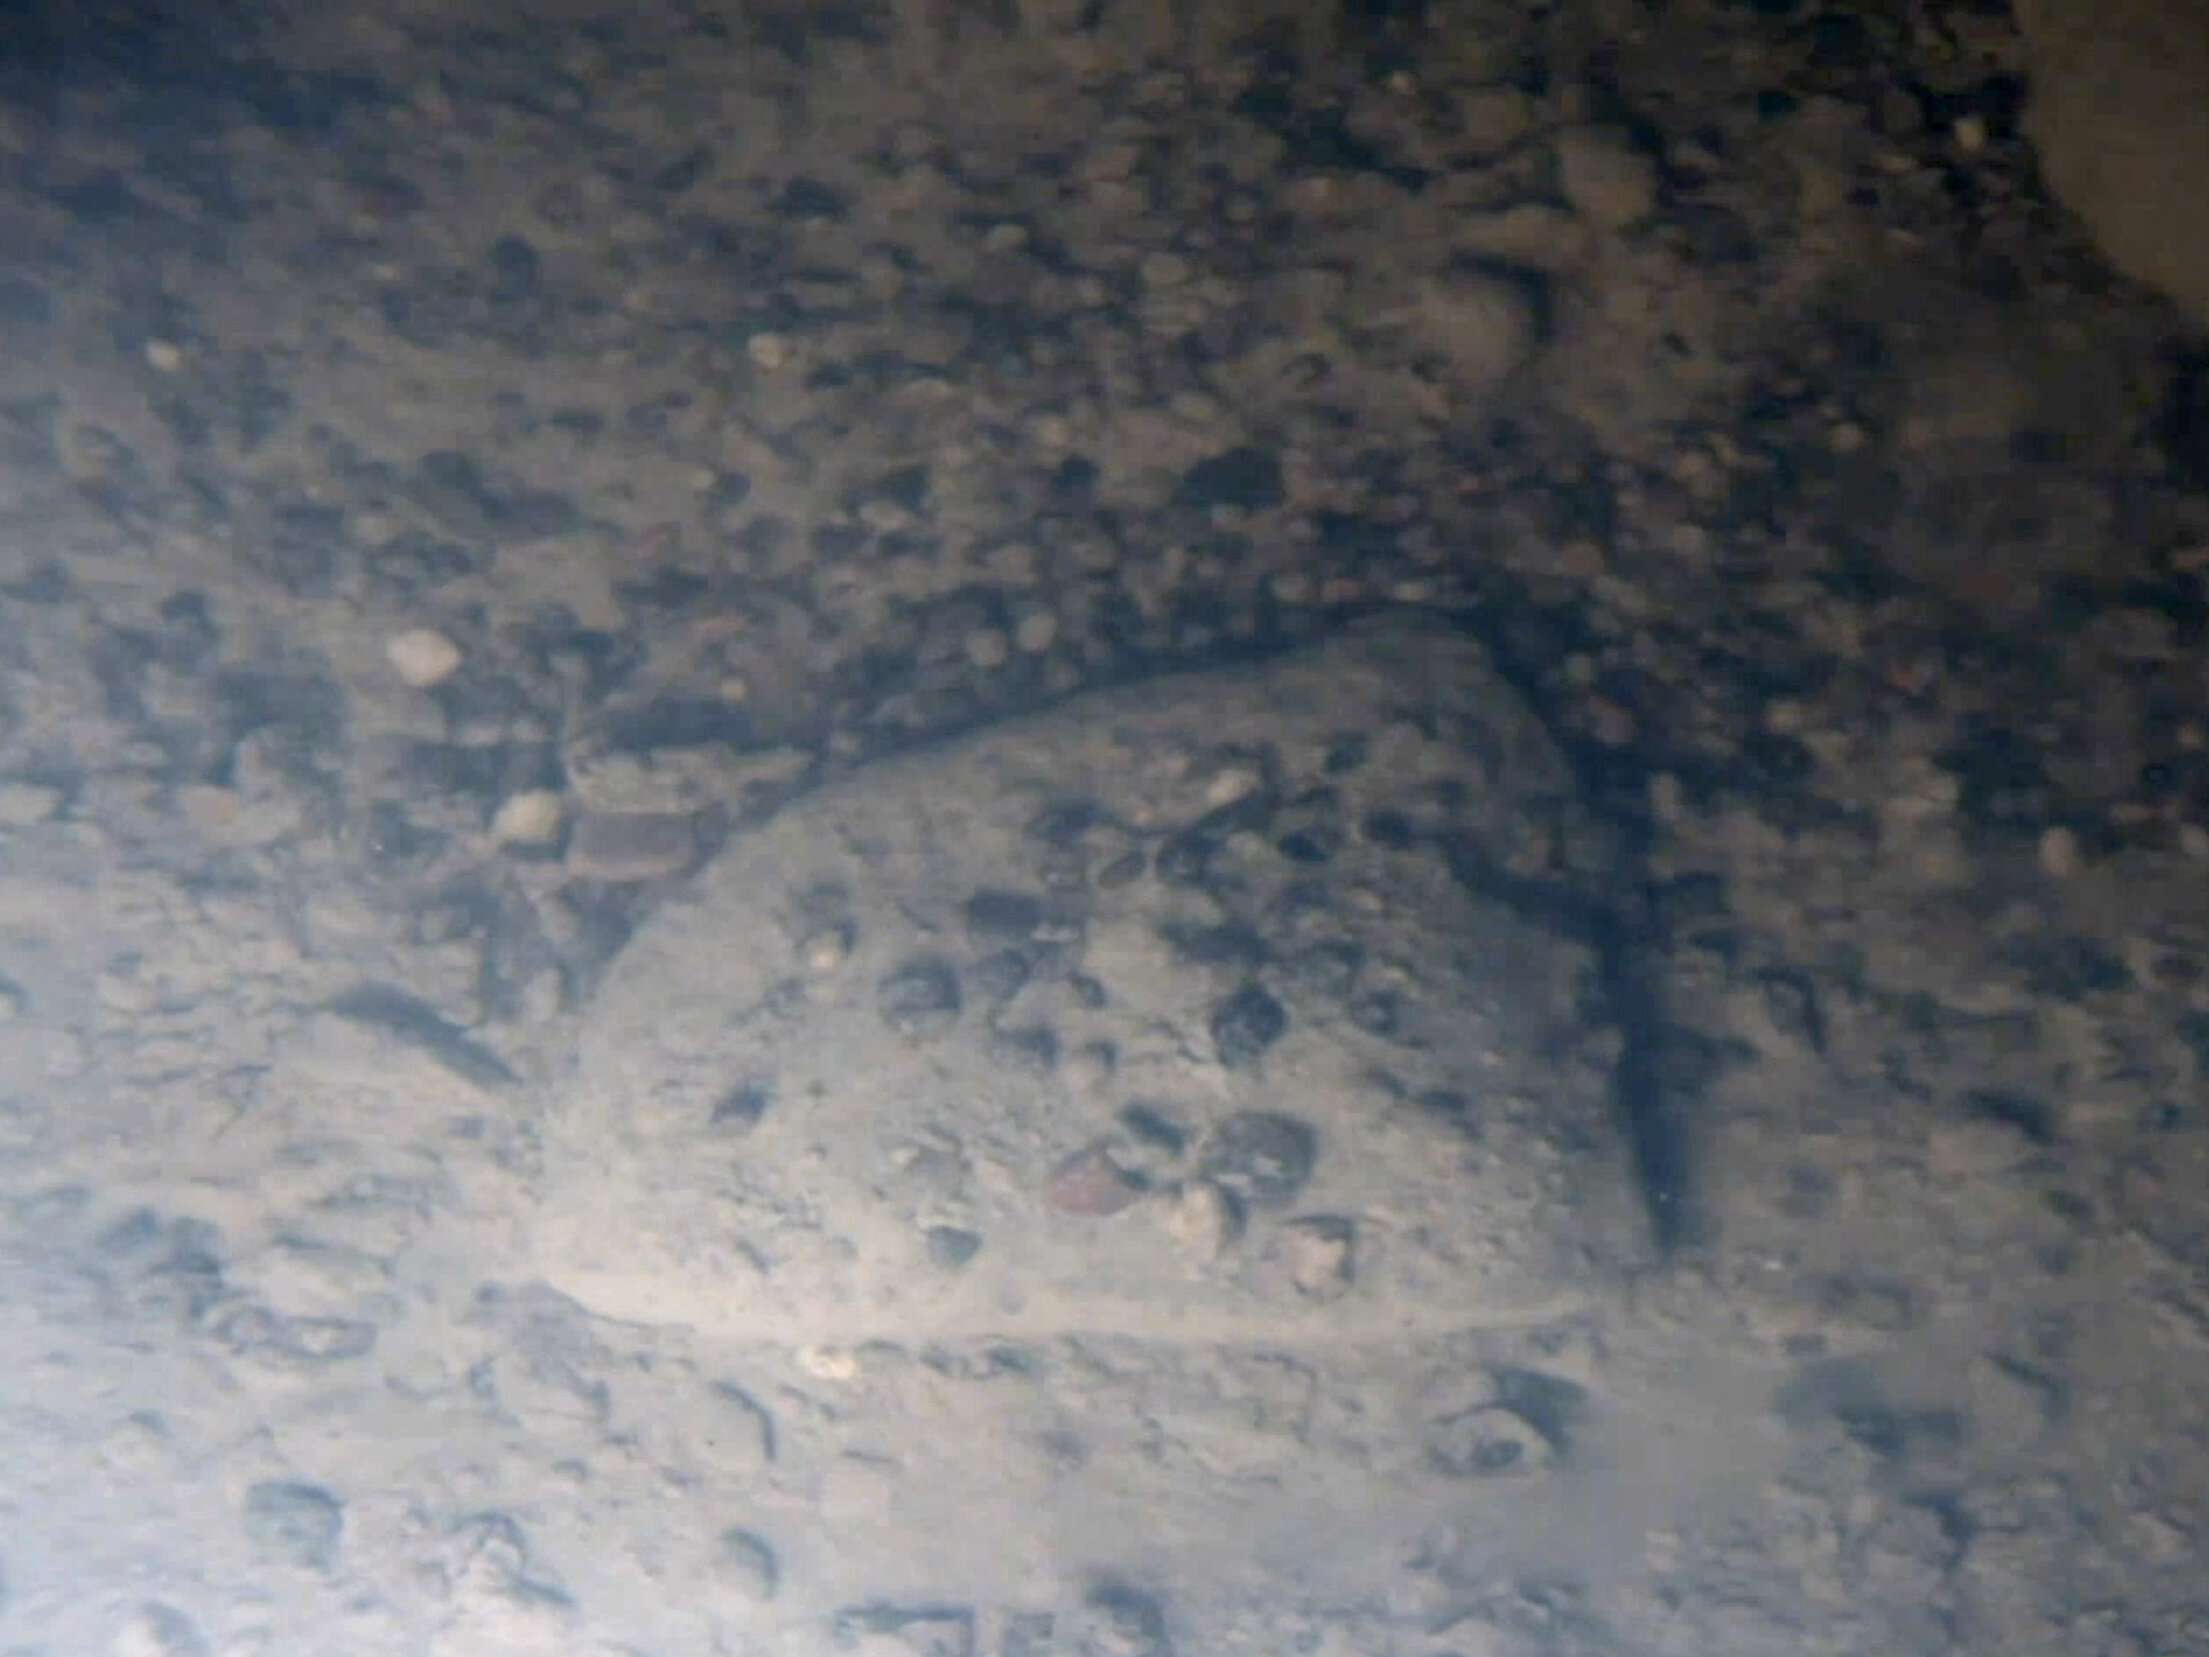 ScreenShot 10 - Sediment at bottom of the lake - Bob Zook and John Winans (1).jpg